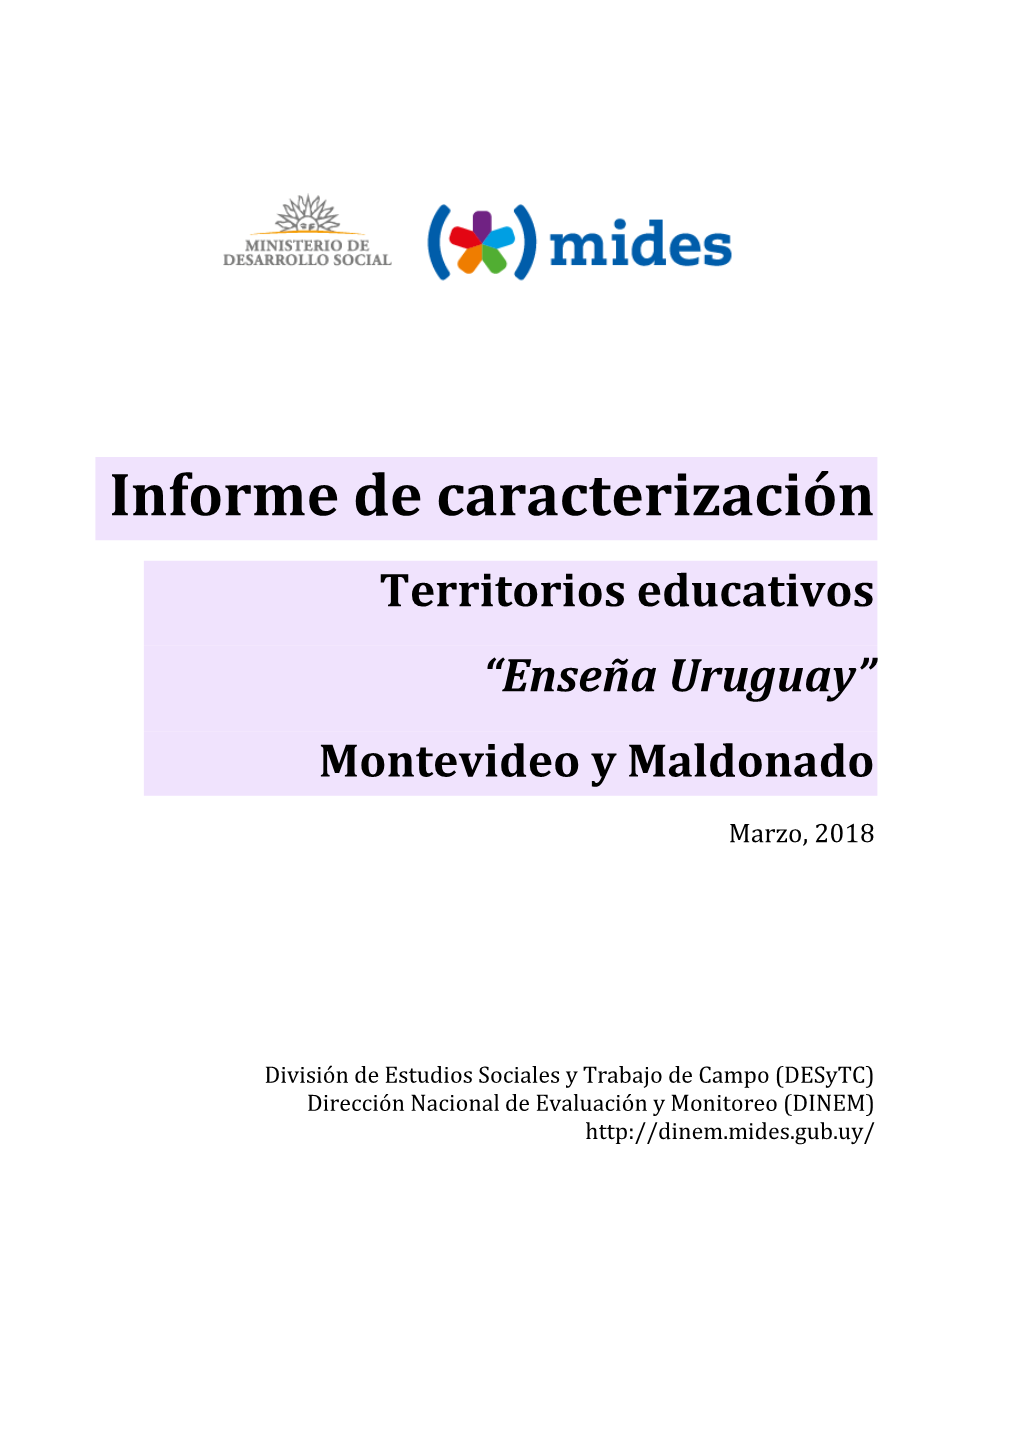 Informe De Caracterización Territorios Educativos “Enseña Uruguay” Montevideo Y Maldonado